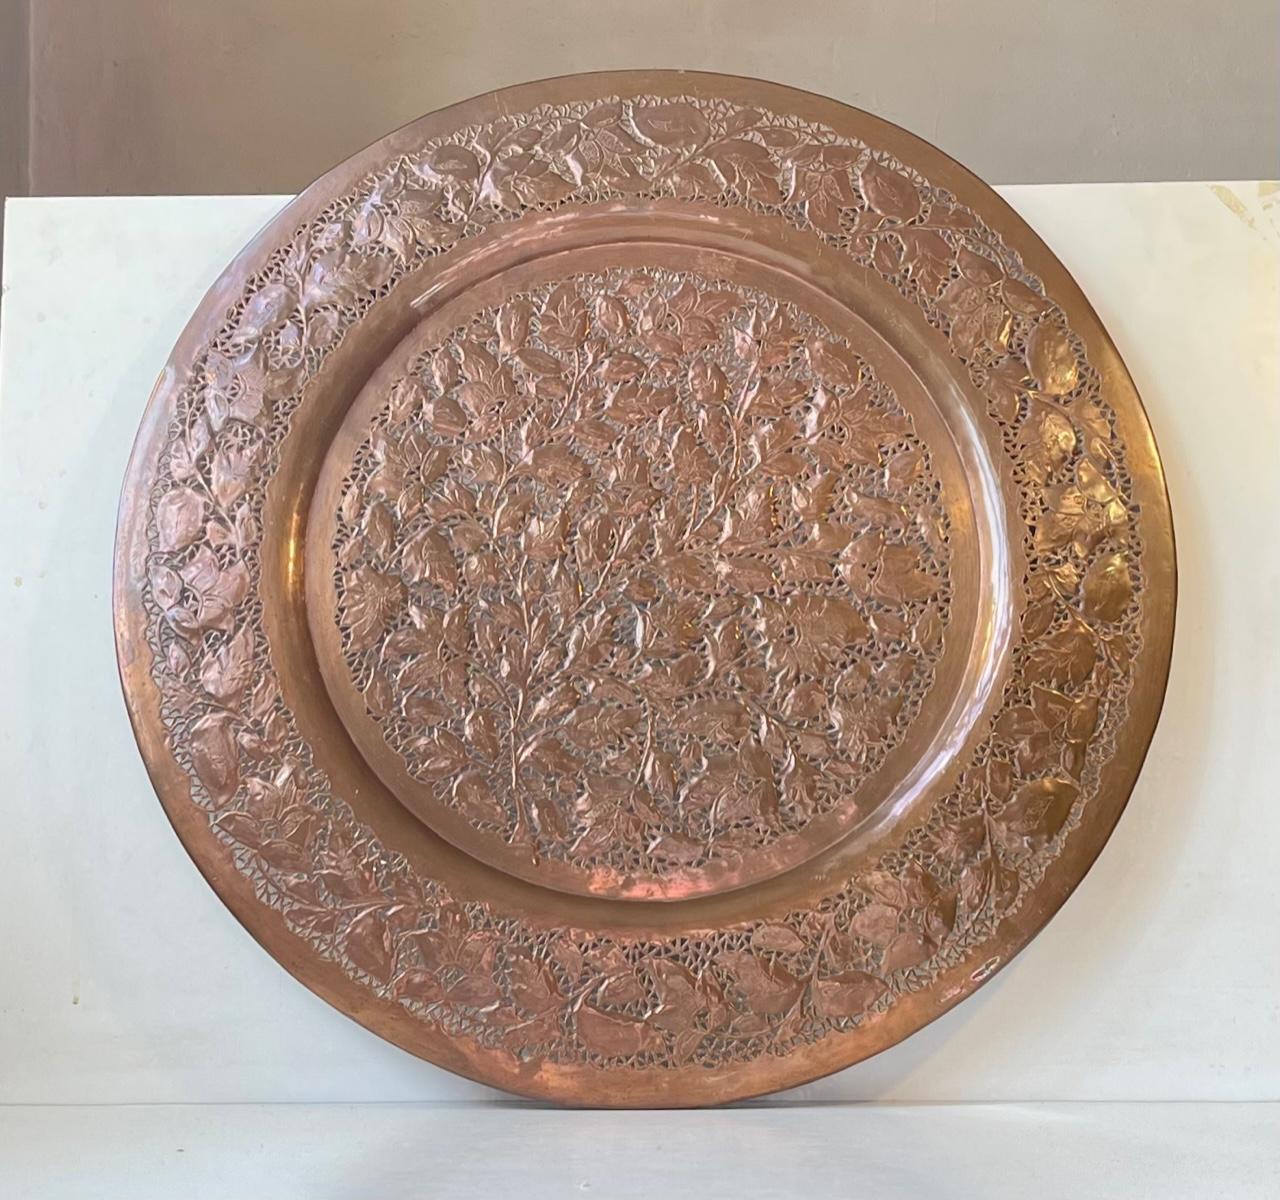 Extra-large (57 cm) plateau persan en cuivre décoré de feuilles et de fleurs avec des perforations complexes. Il a été fabriqué au Pakistan ou en Inde dans les années 1960 ou avant. Il peut être utilisé comme plateau pour servir et peut être